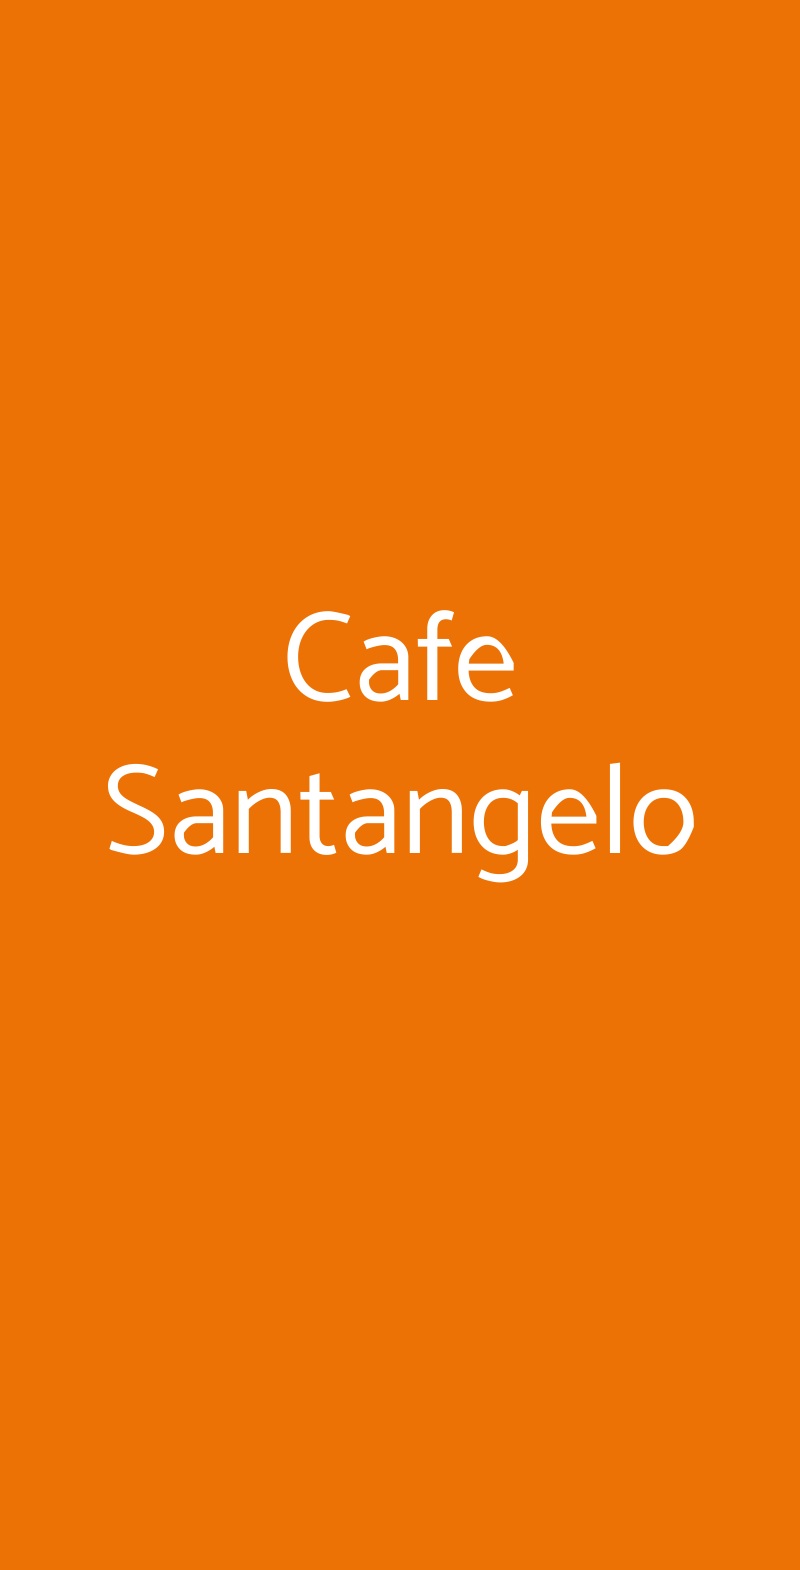 Cafe Santangelo Bologna menù 1 pagina